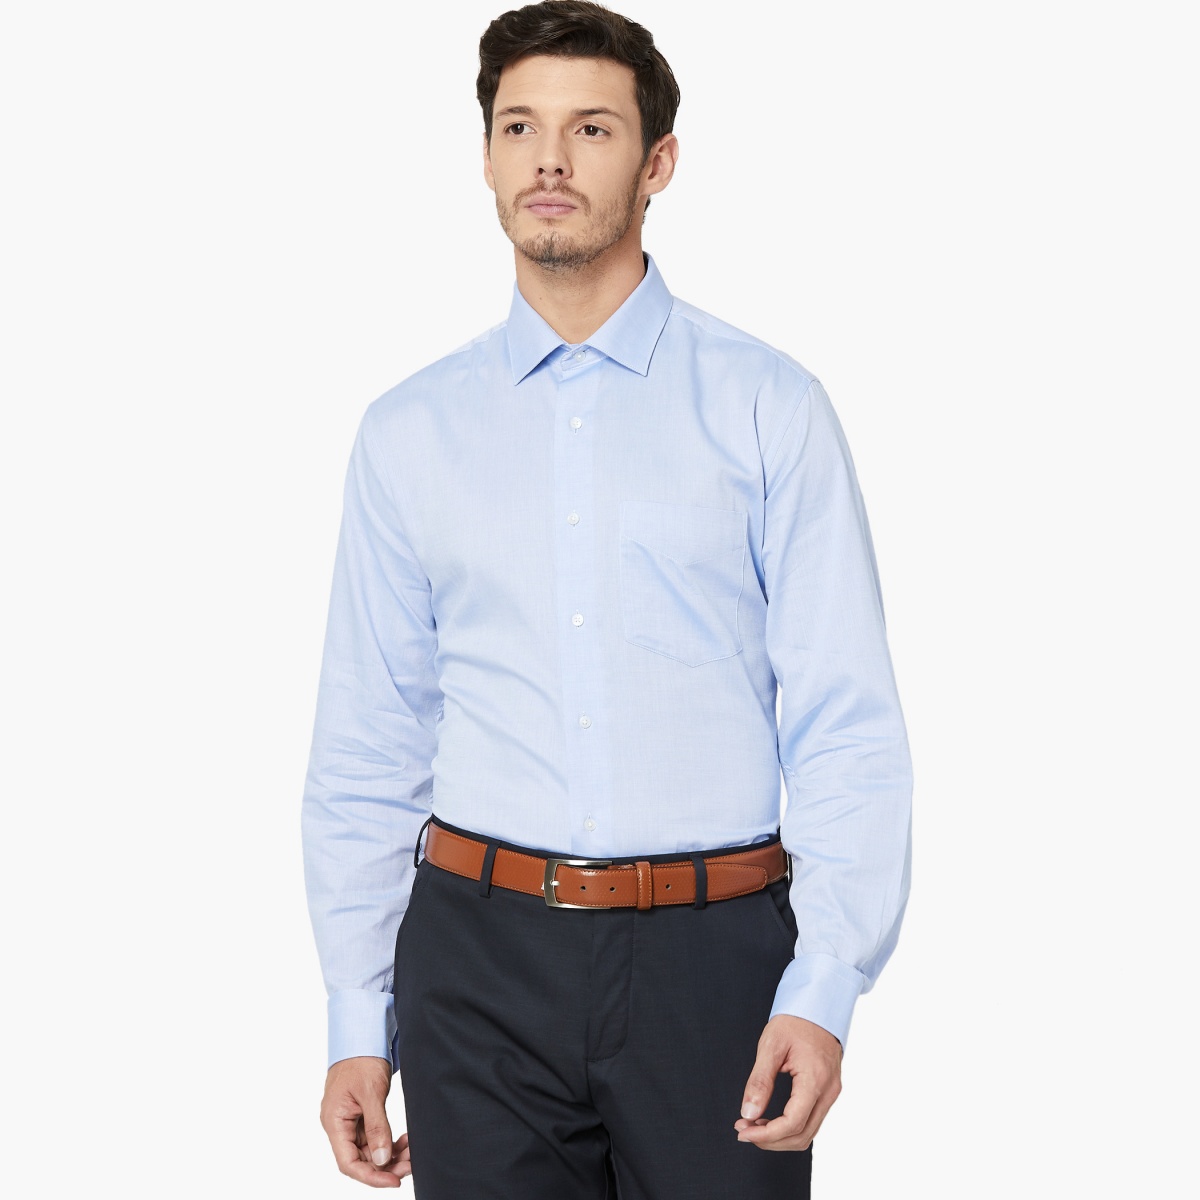 VAN HEUSEN Solid Full Sleeves Custom Fit Formal Shirt